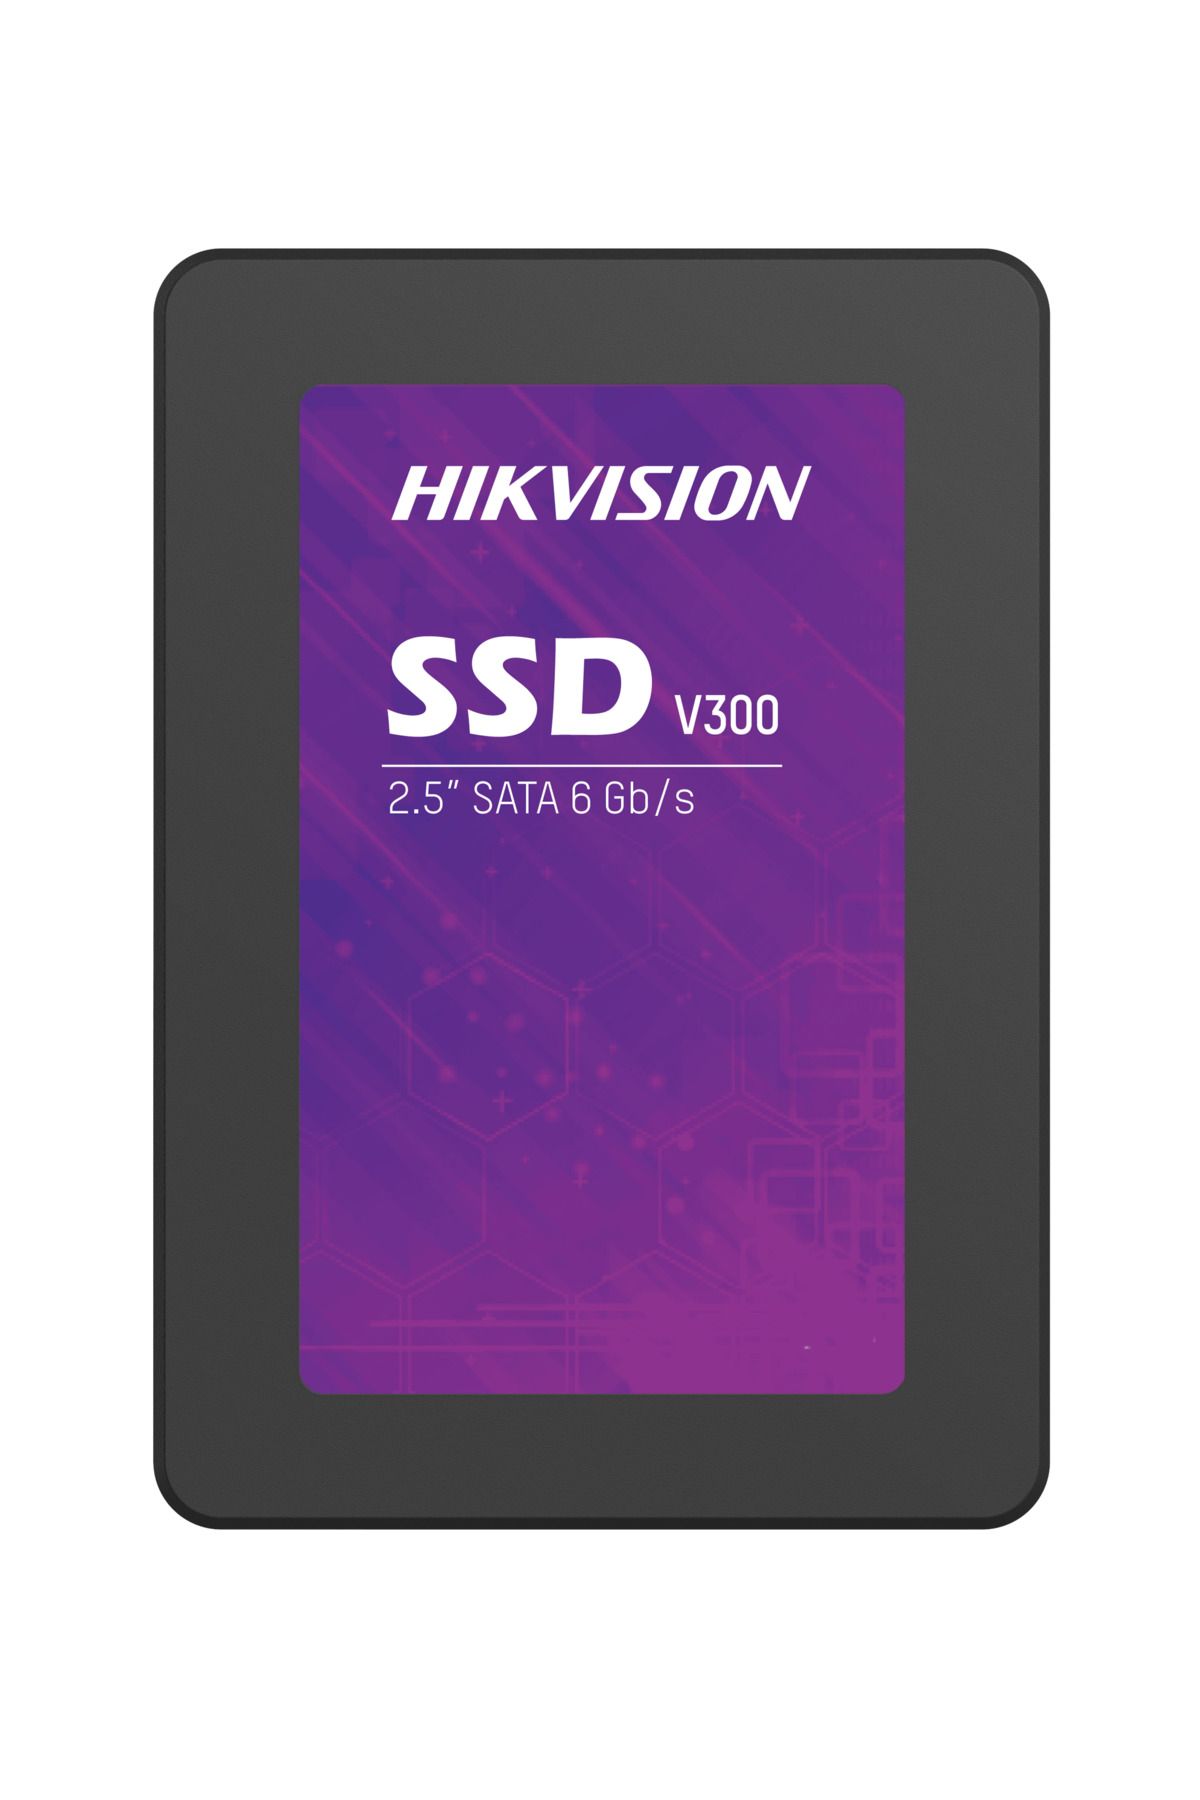 Hikvision 512GB V300 560-505 MB/S Sata 3 2.5" 7/24 Cctv SSD